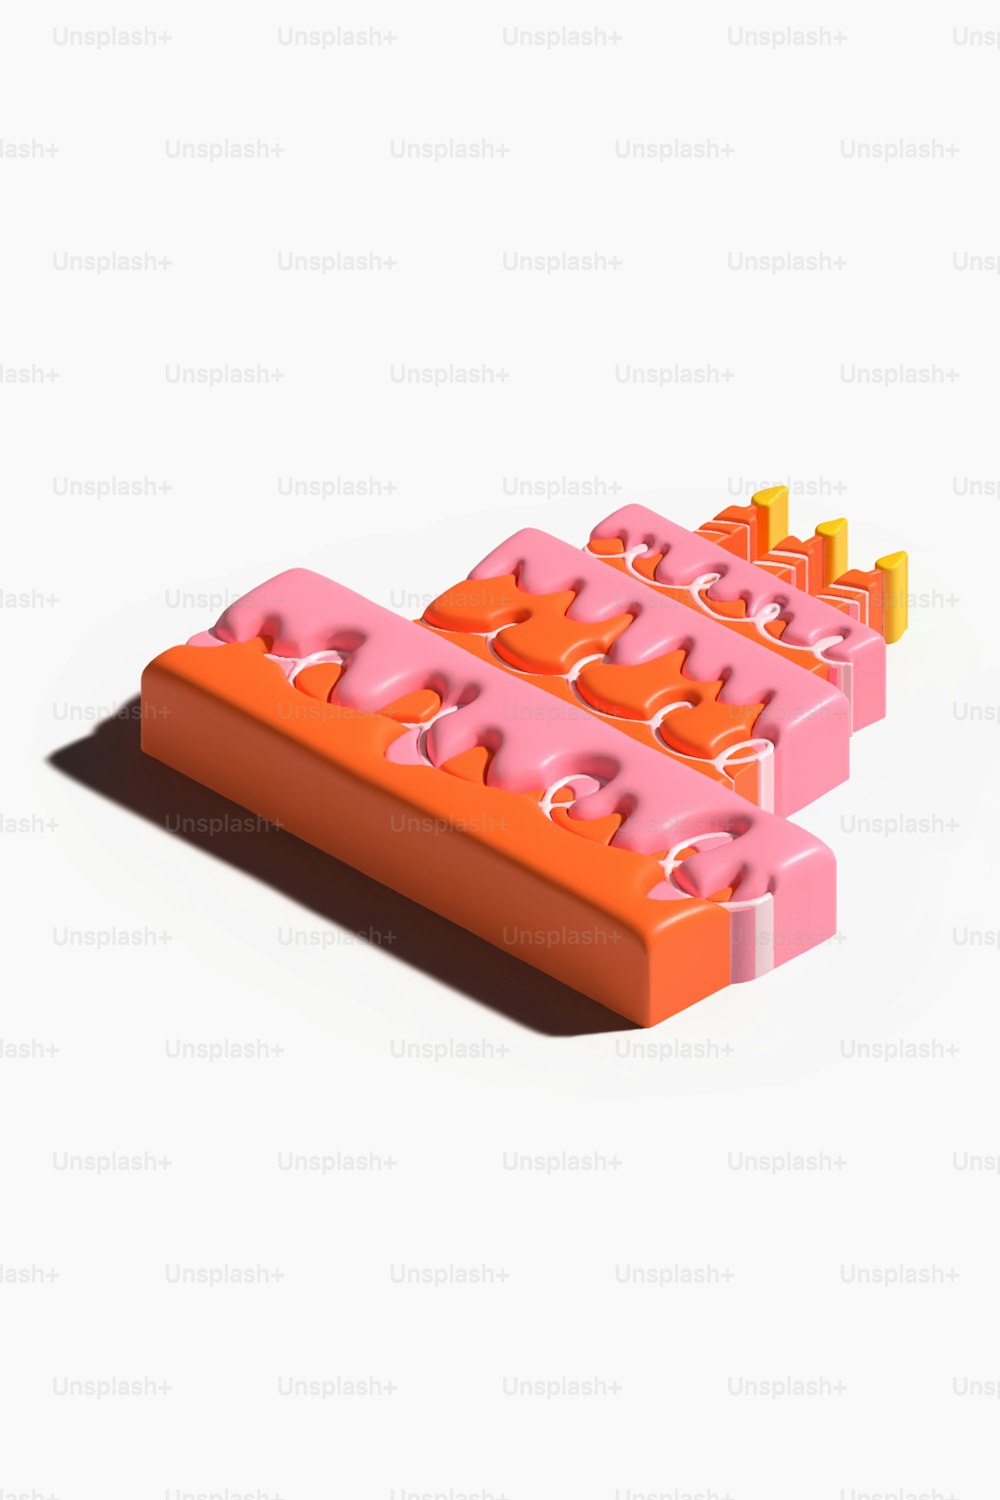 Un paio di Lego arancioni e rosa seduti uno sopra l'altro